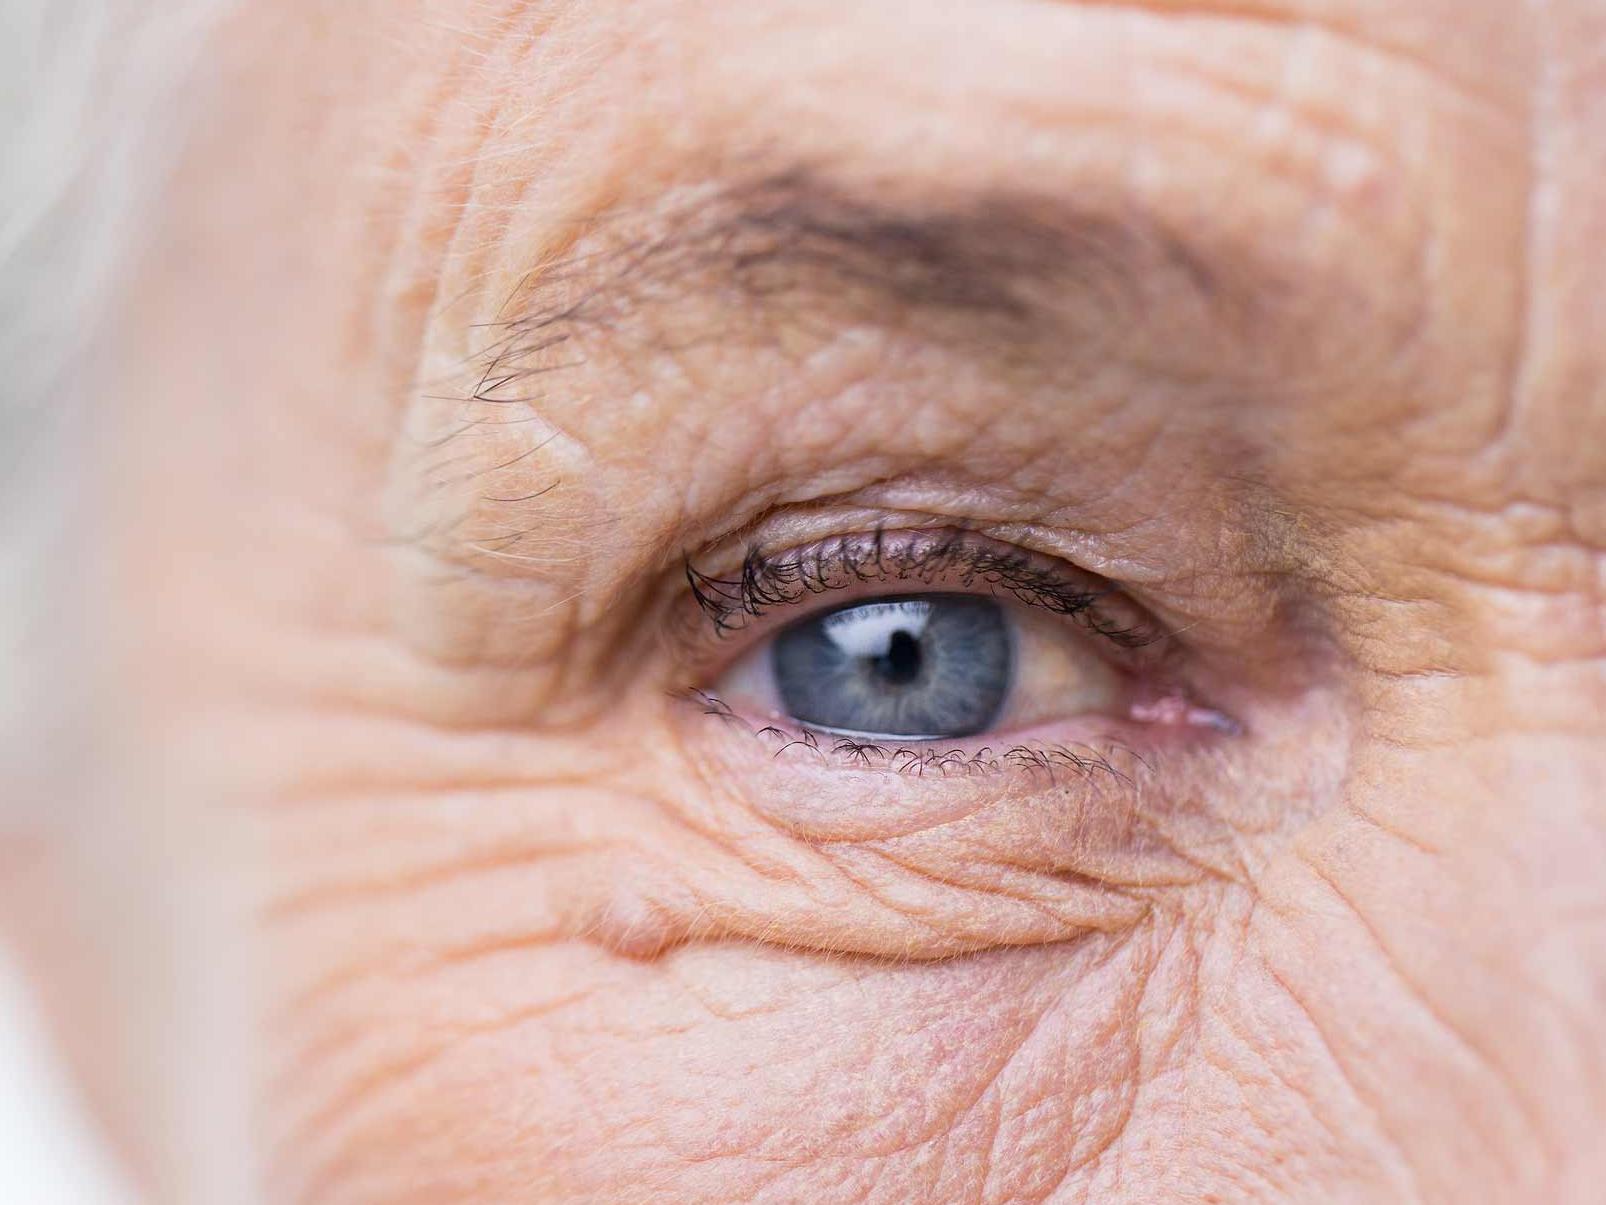 Obraz przedstawia zbliżenie niezdrowego oka, ilustrujące potencjalne zagrożenia dla przydatków oka. 